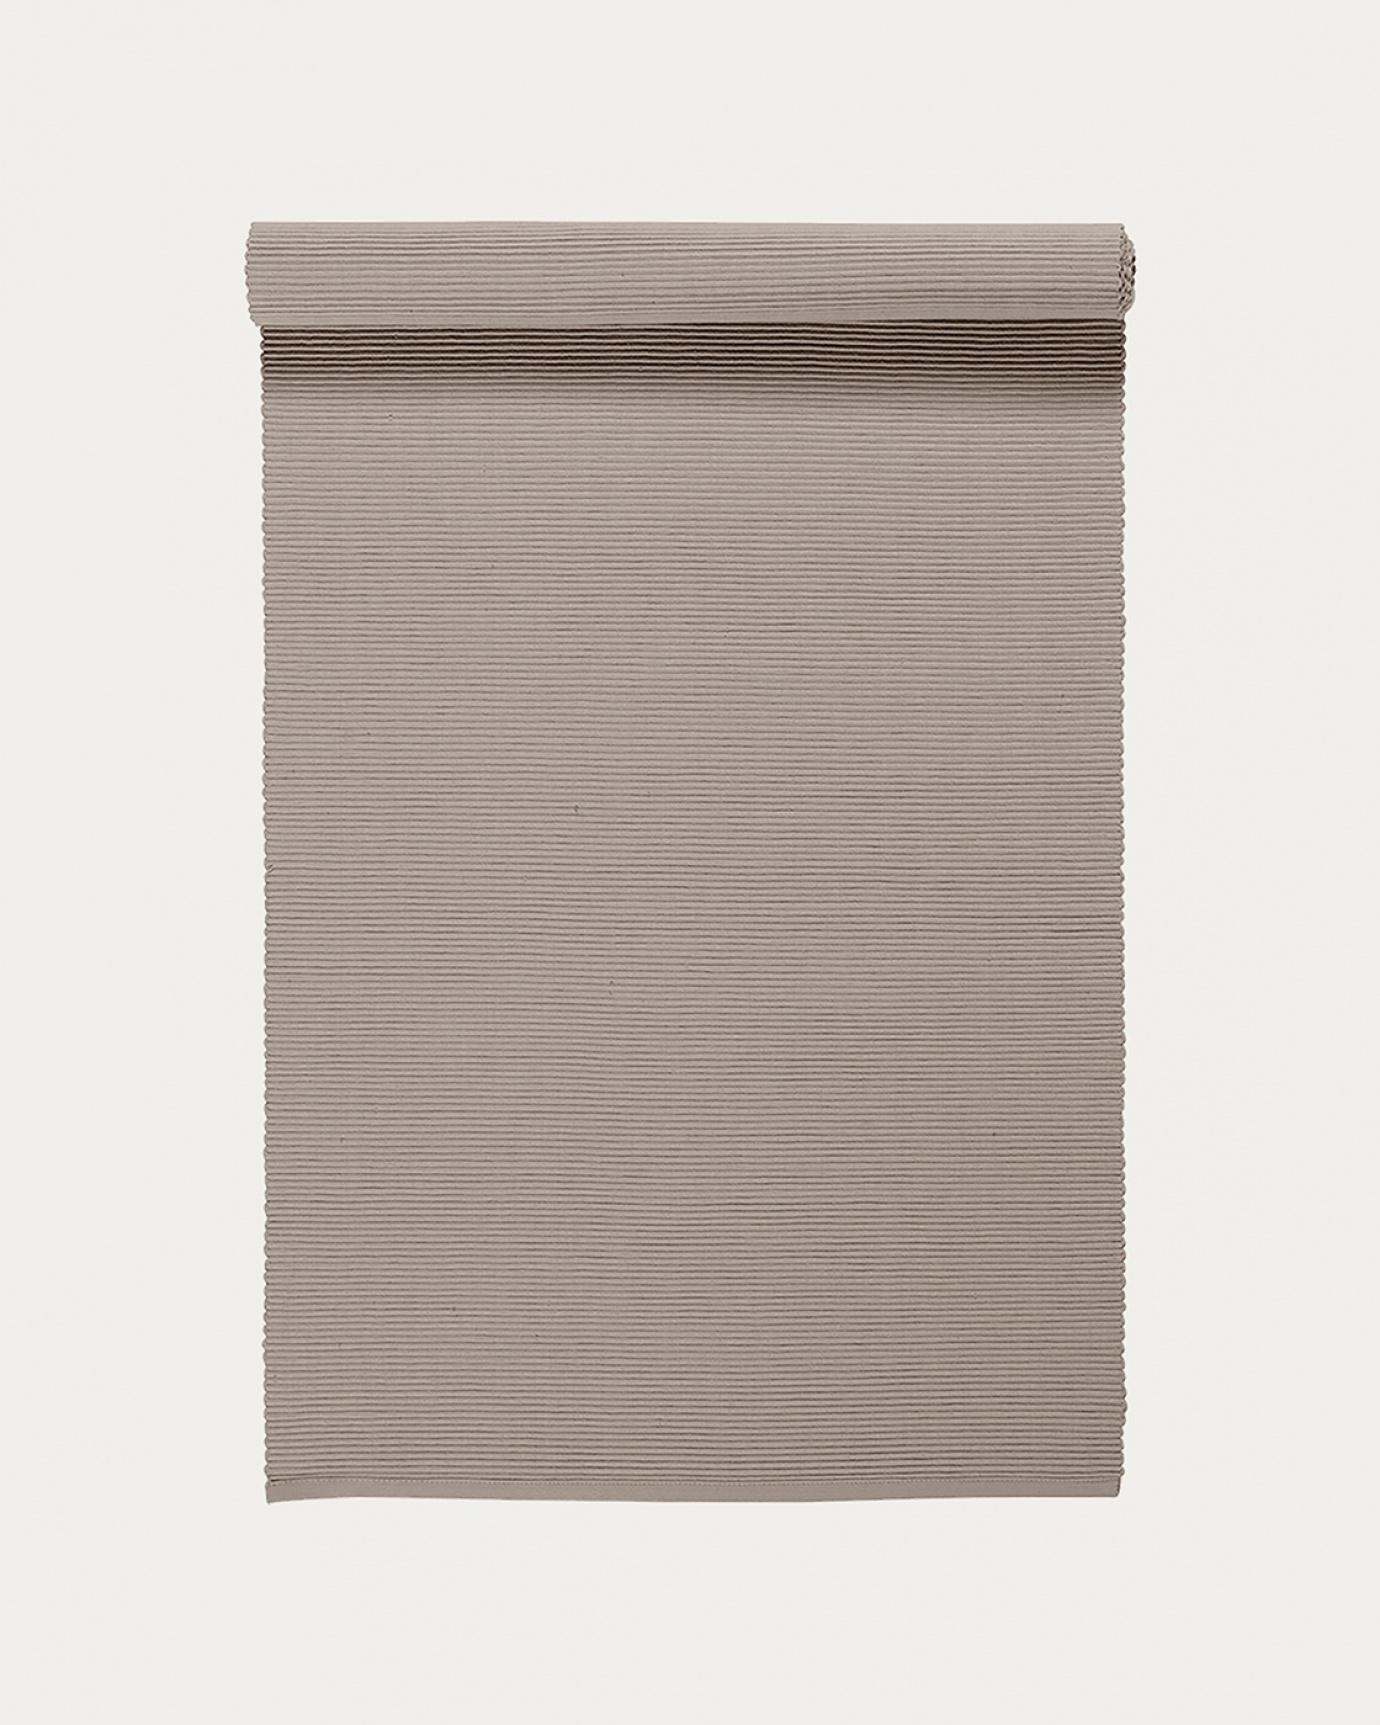 Image du produit chemin de table UNI taupe en coton doux de qualité côtelée de LINUM DESIGN. Taille 45 x 150 cm.